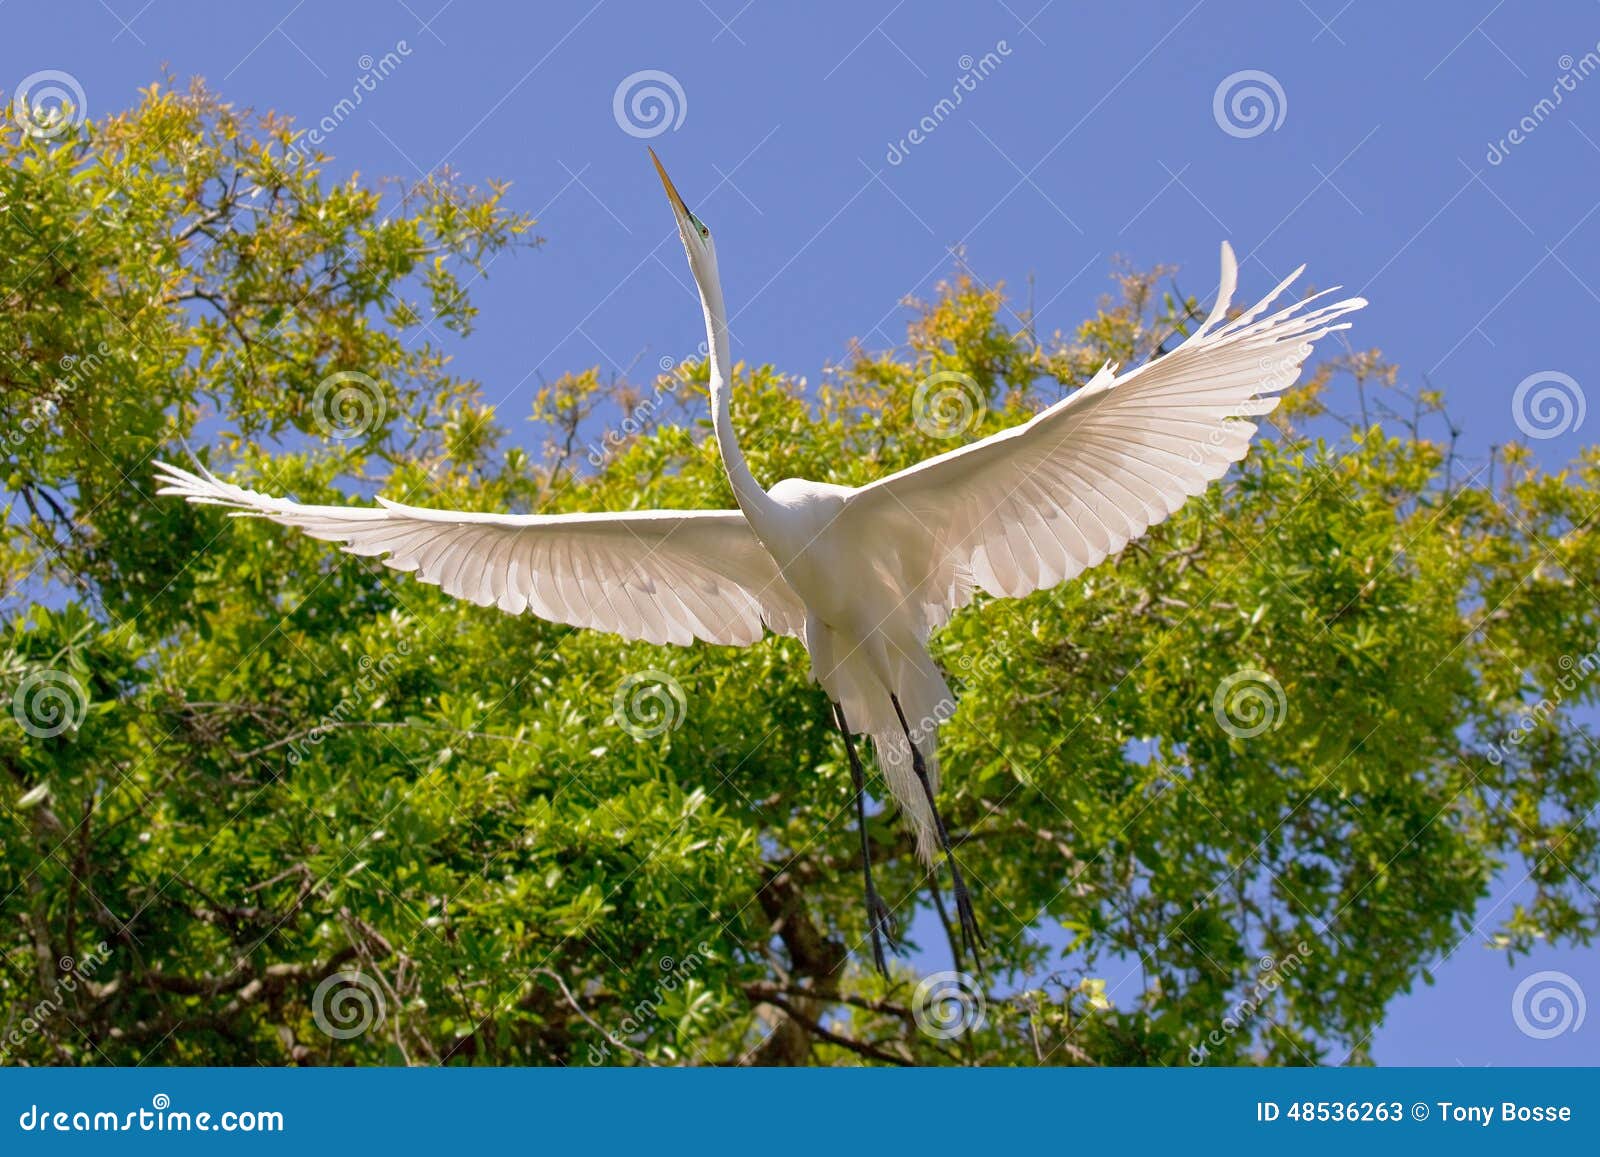 white egret wingspan